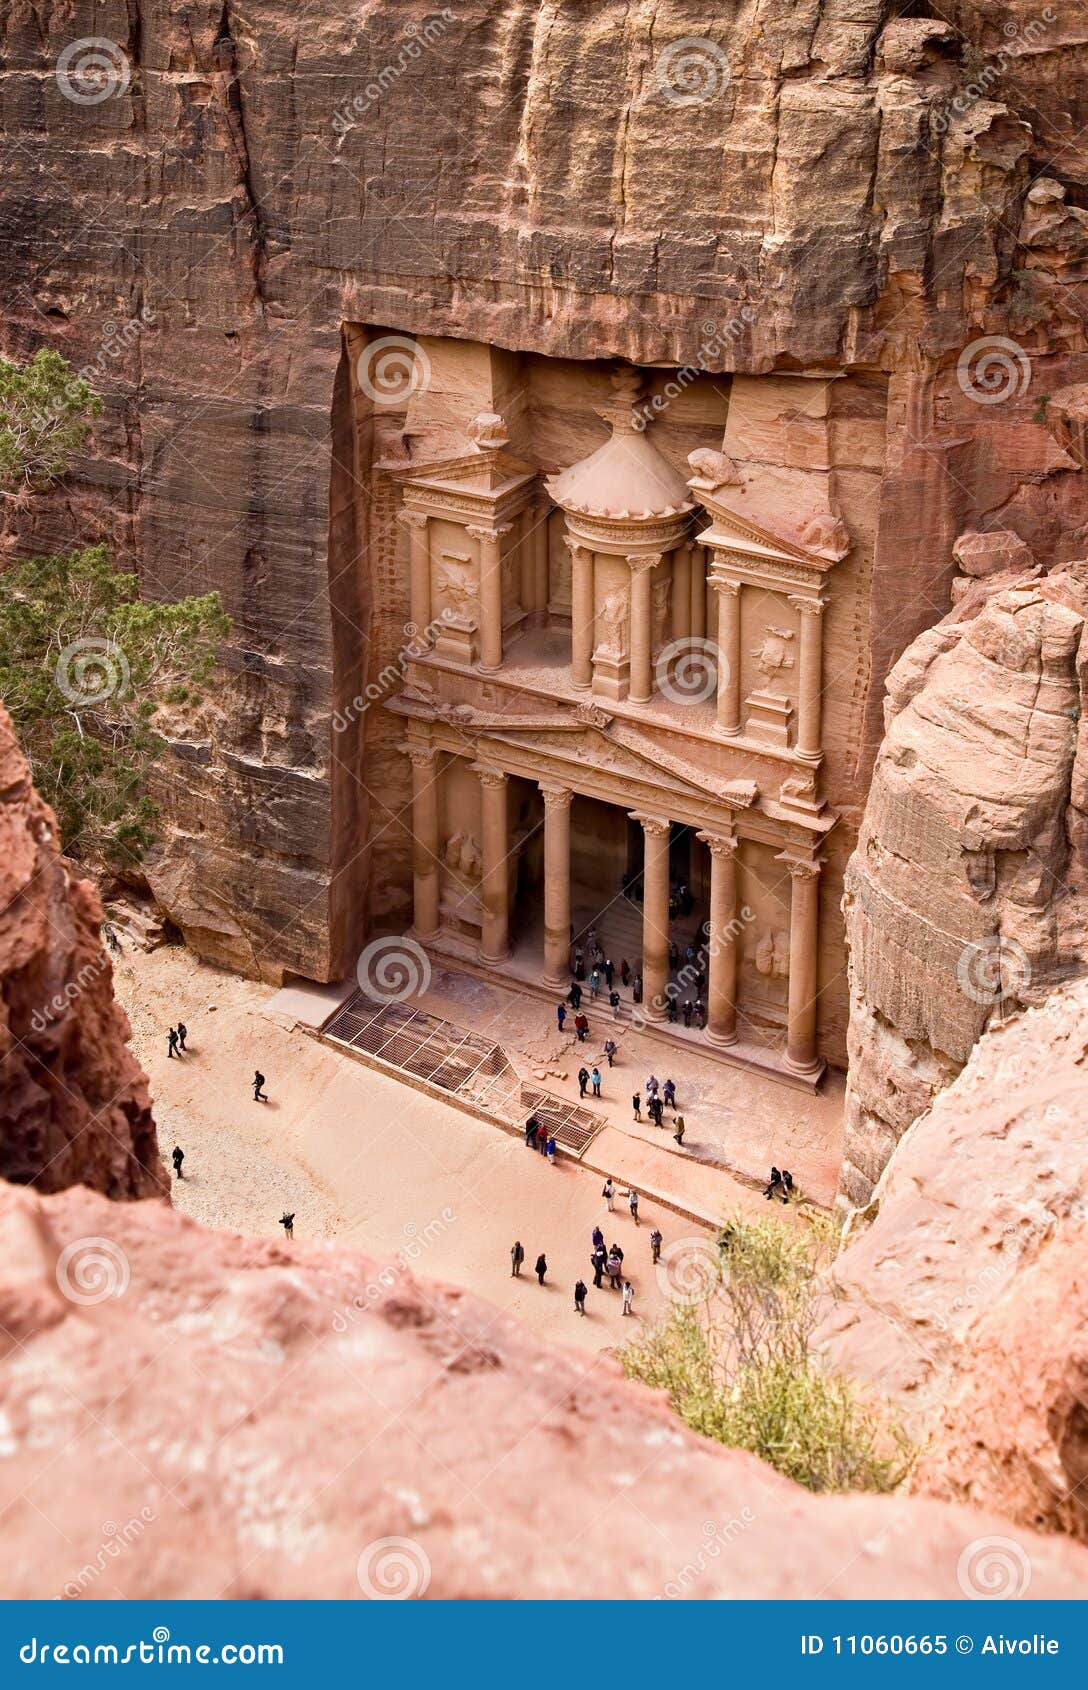 the treasury. ancient city of petra, jordan